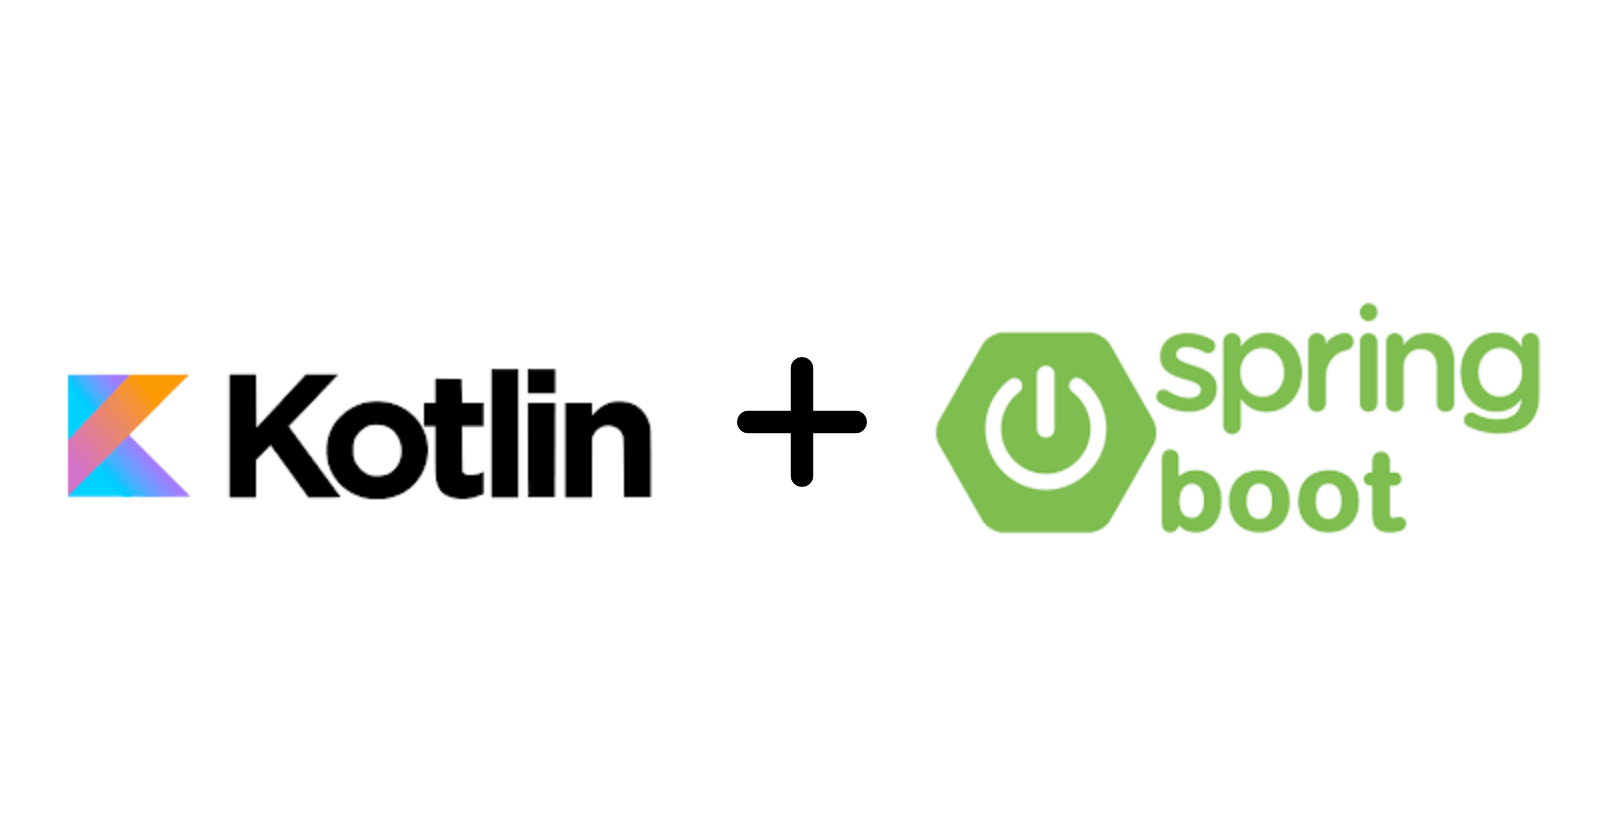 REST API in Kotlin & Spring Boot